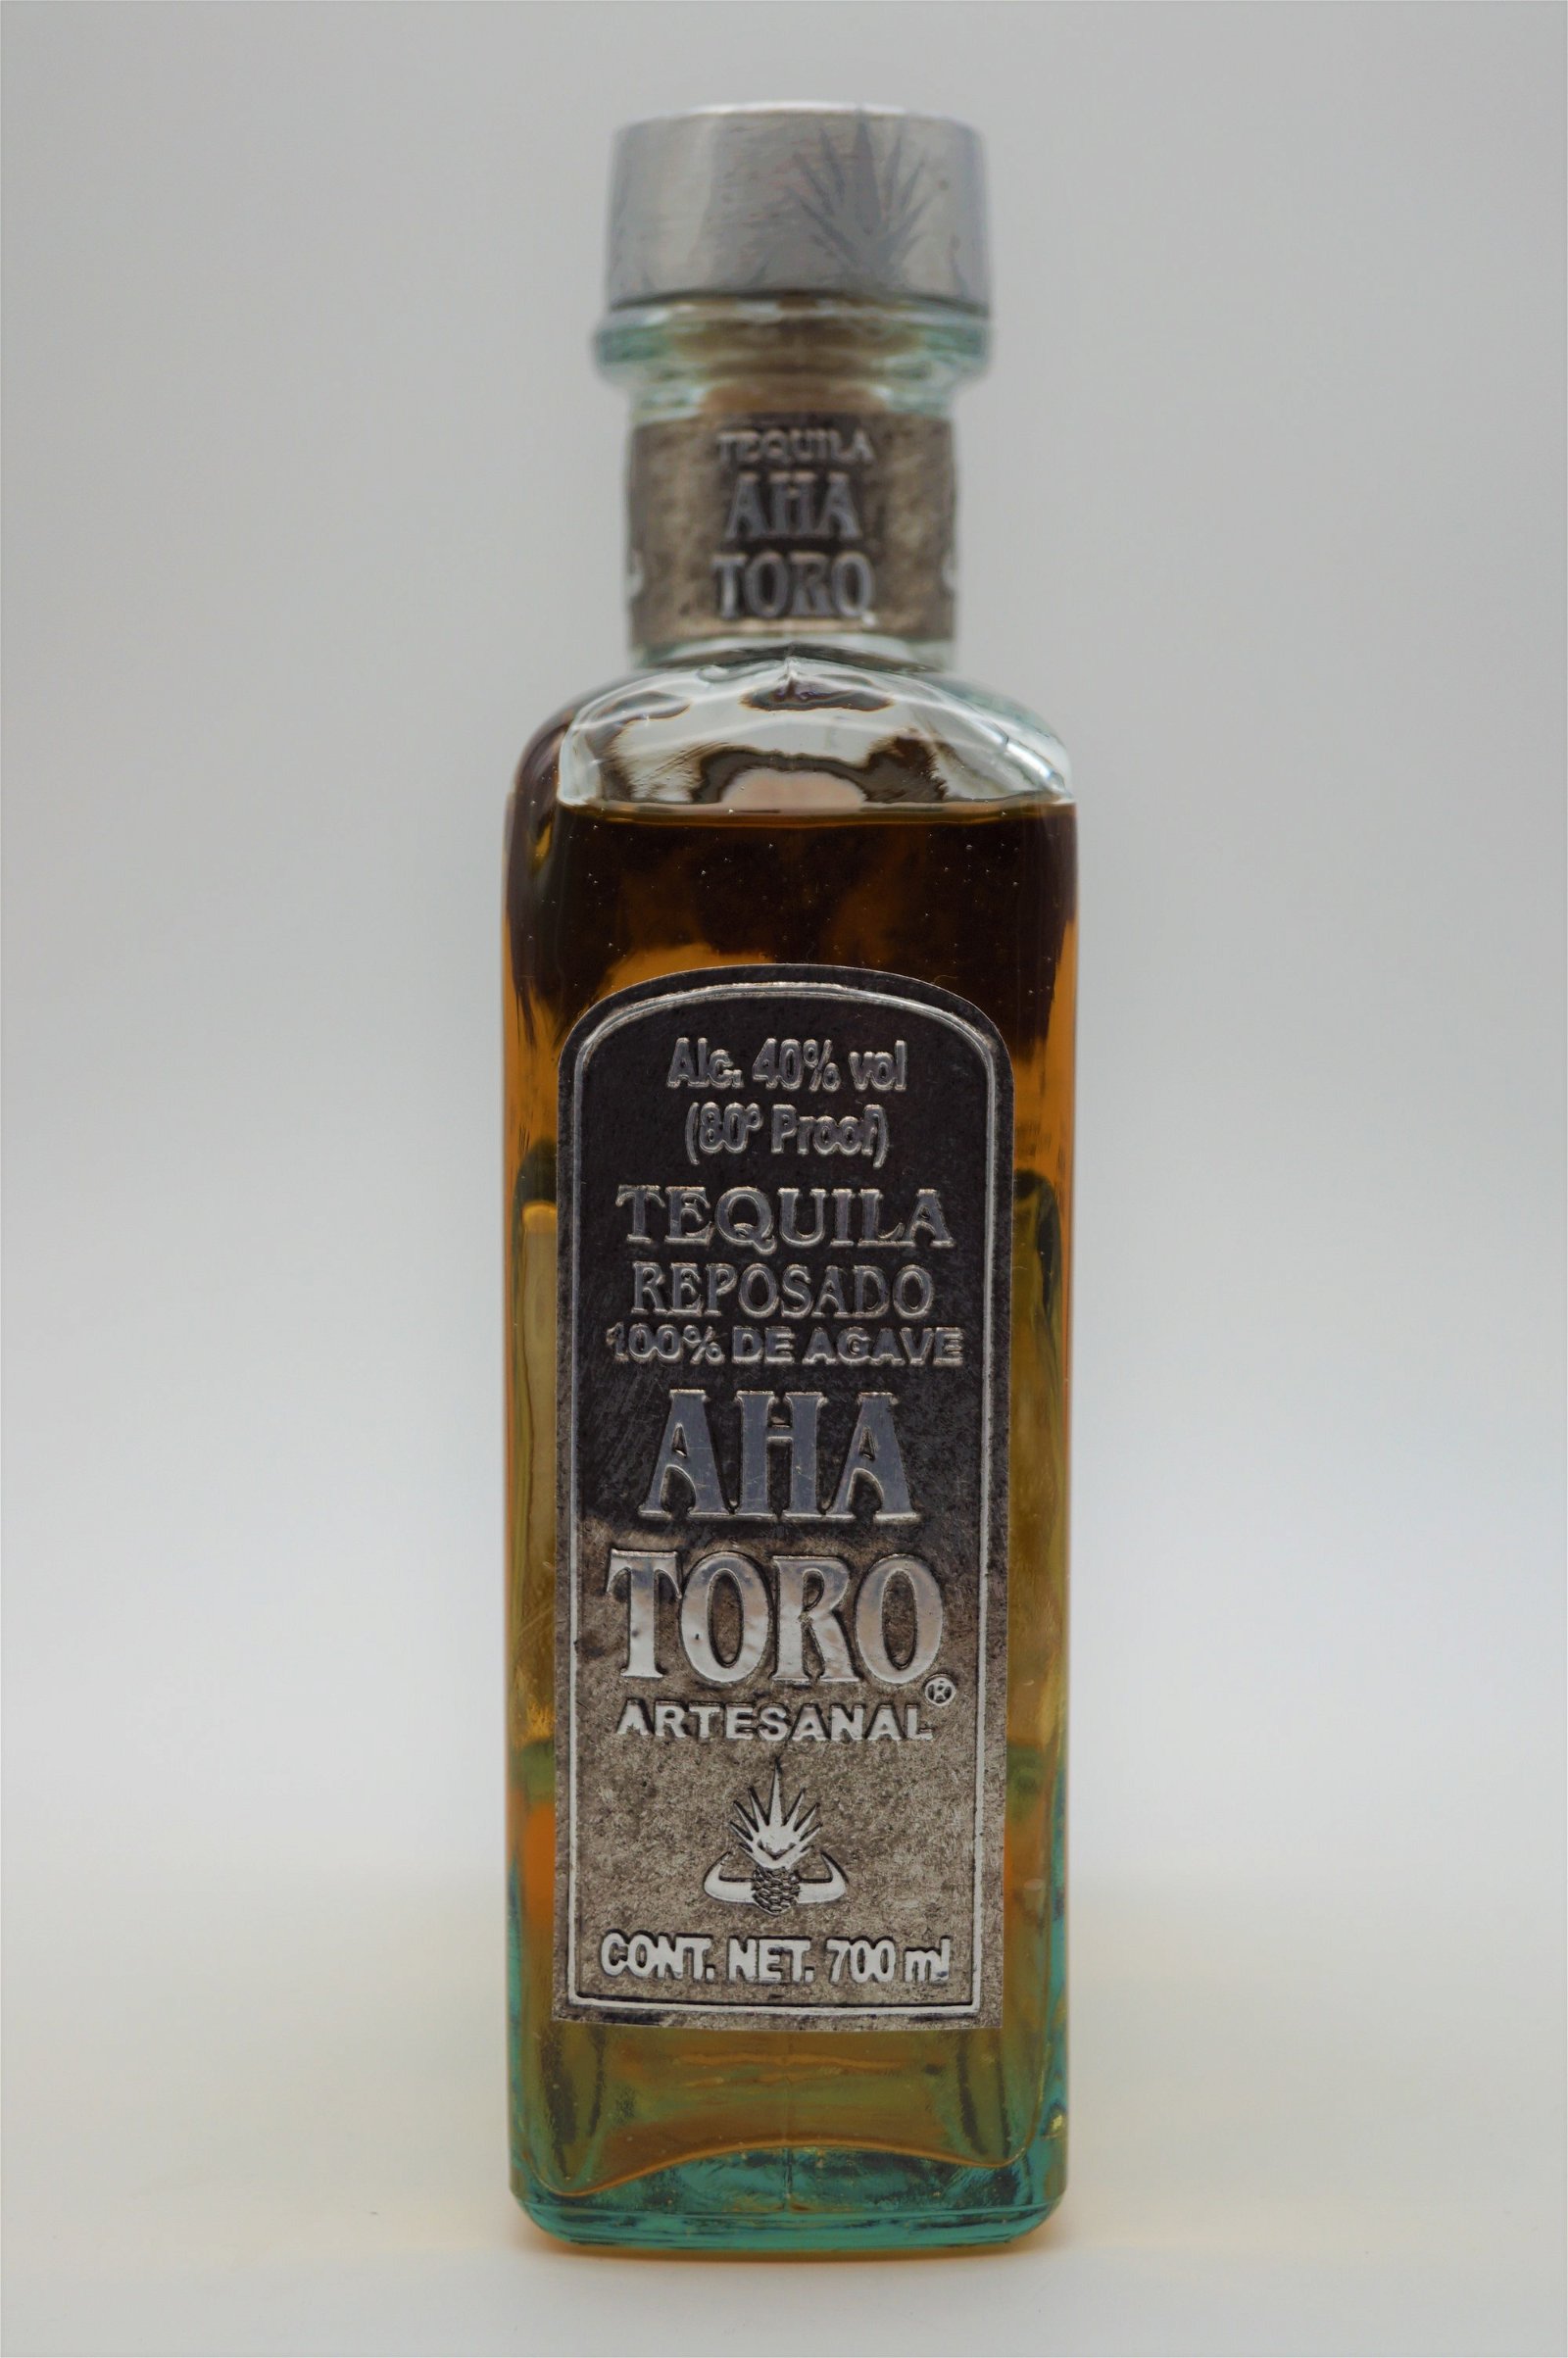 Aha Toro Tequila Reposado